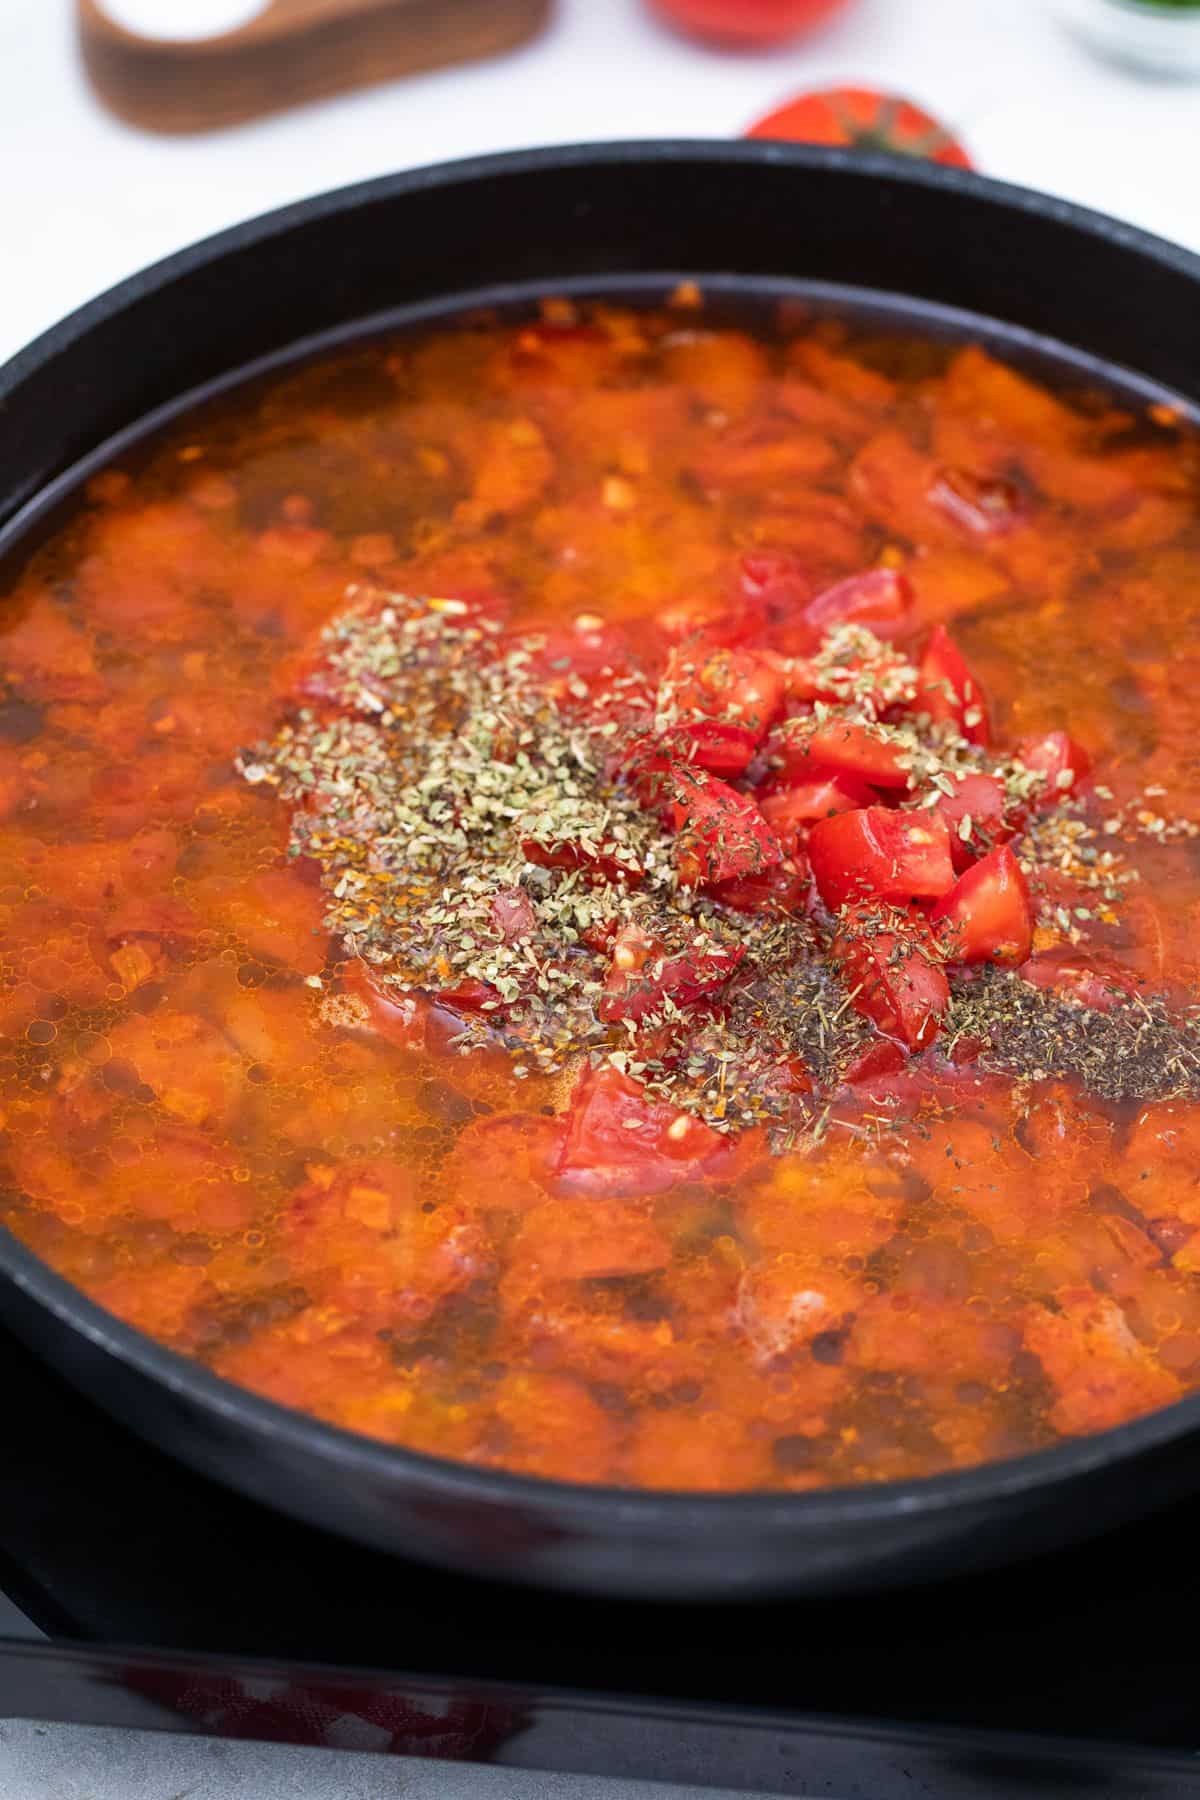 Stew base in a pan with seasonings.